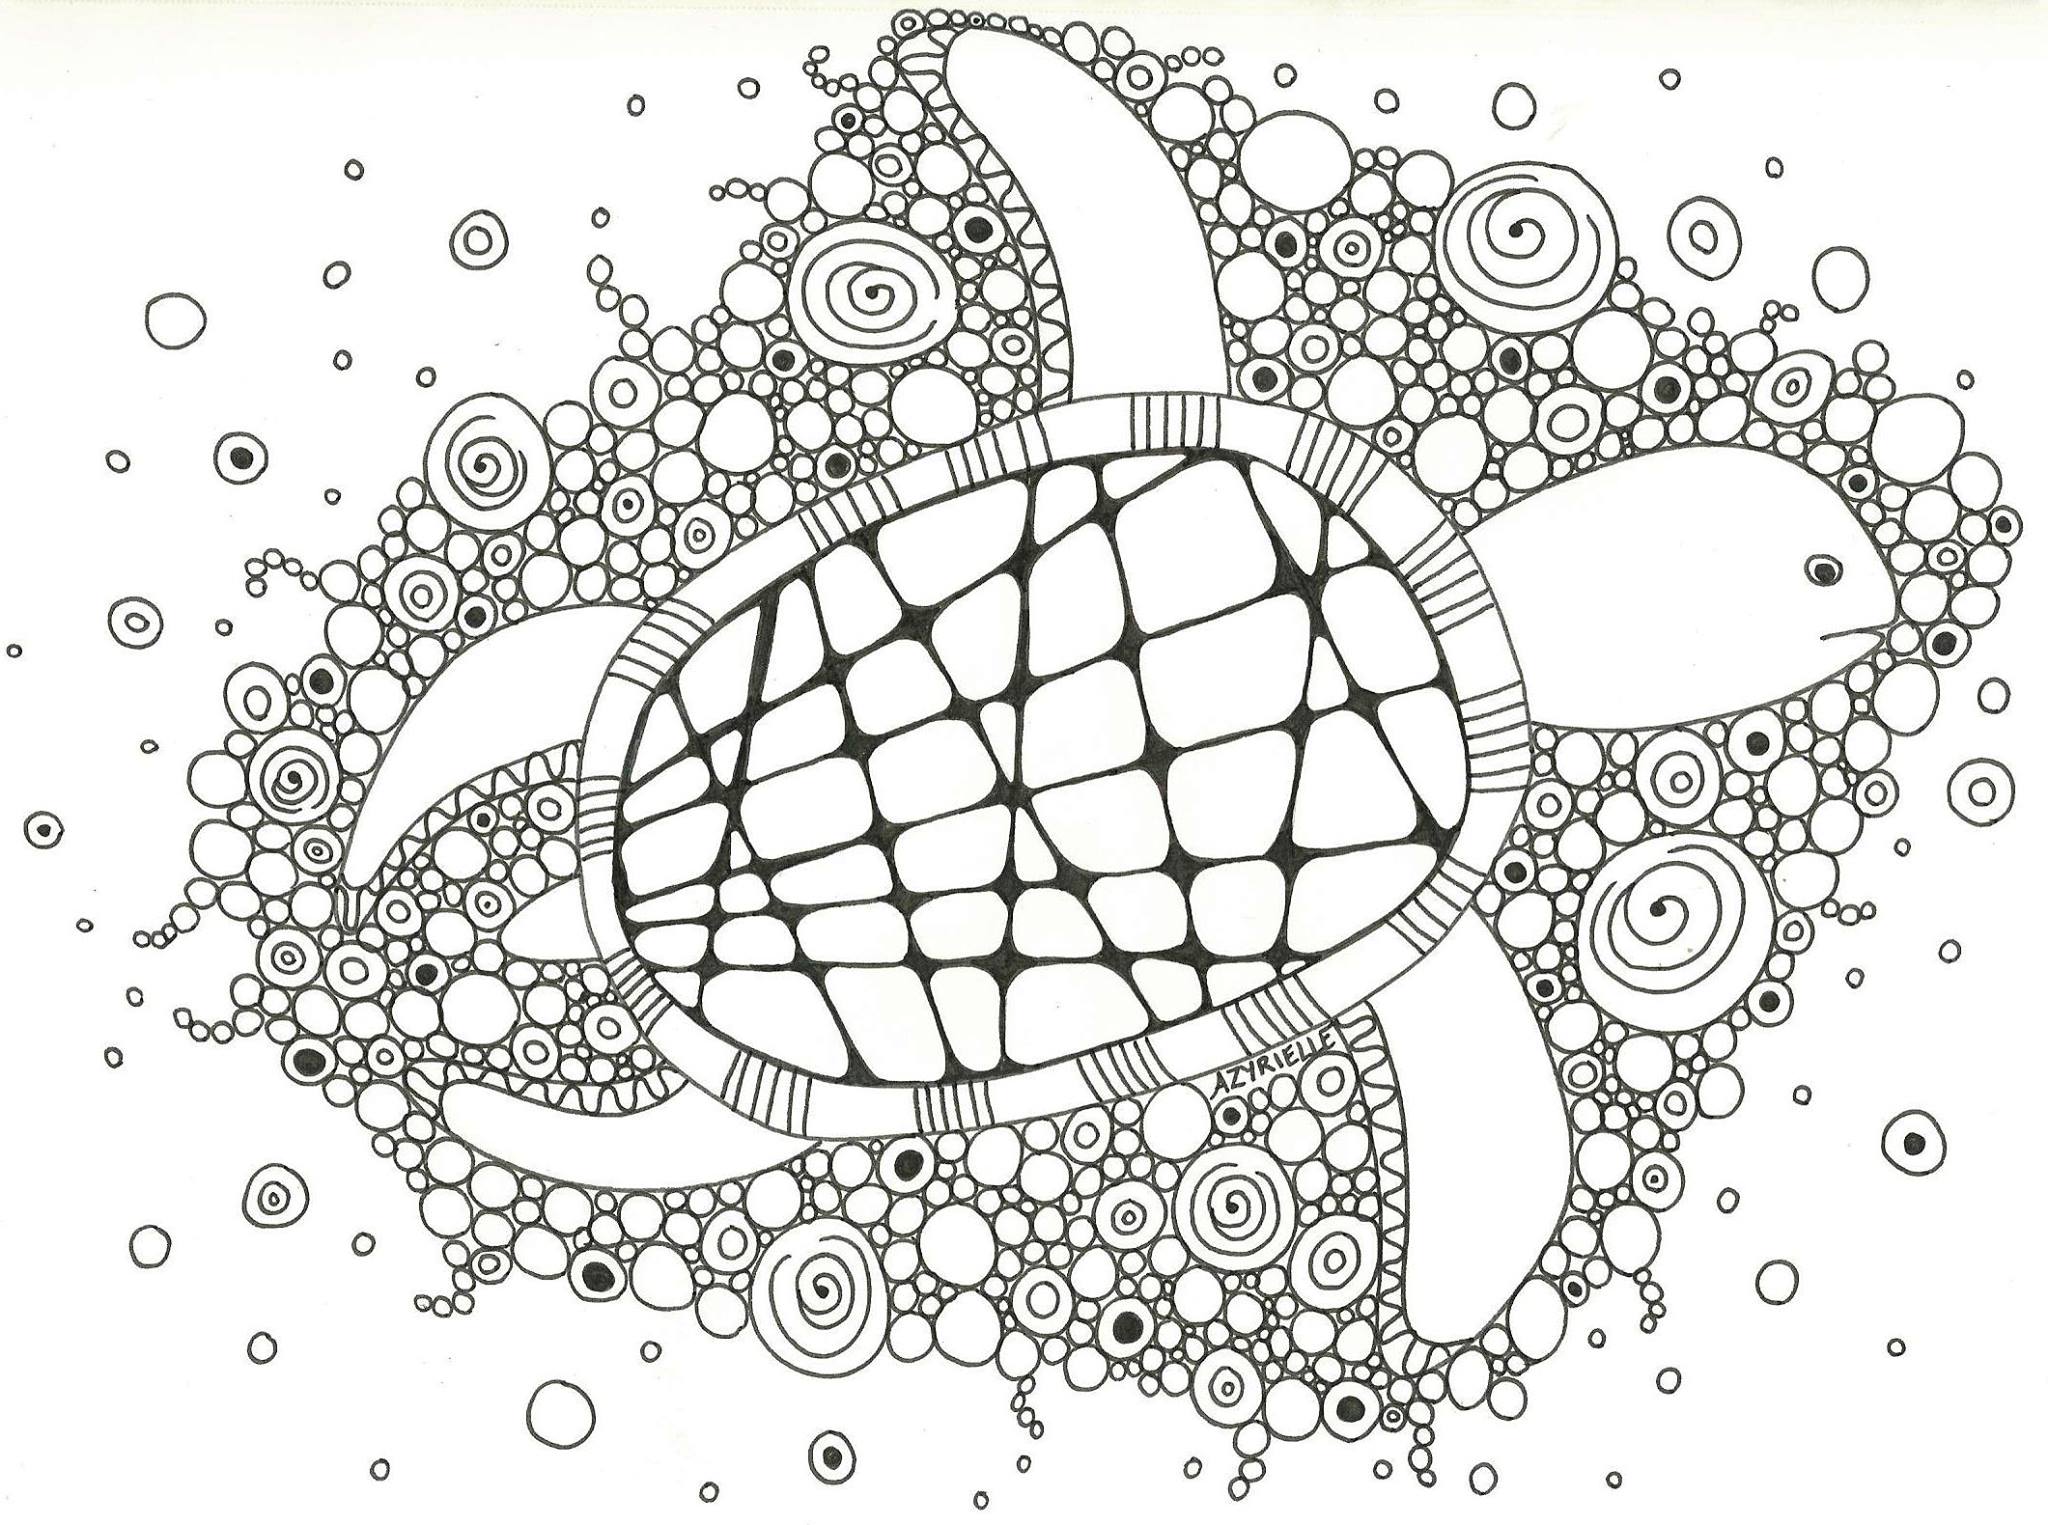 A tartaruga e as suas bolhas, Artista : Azyrielle